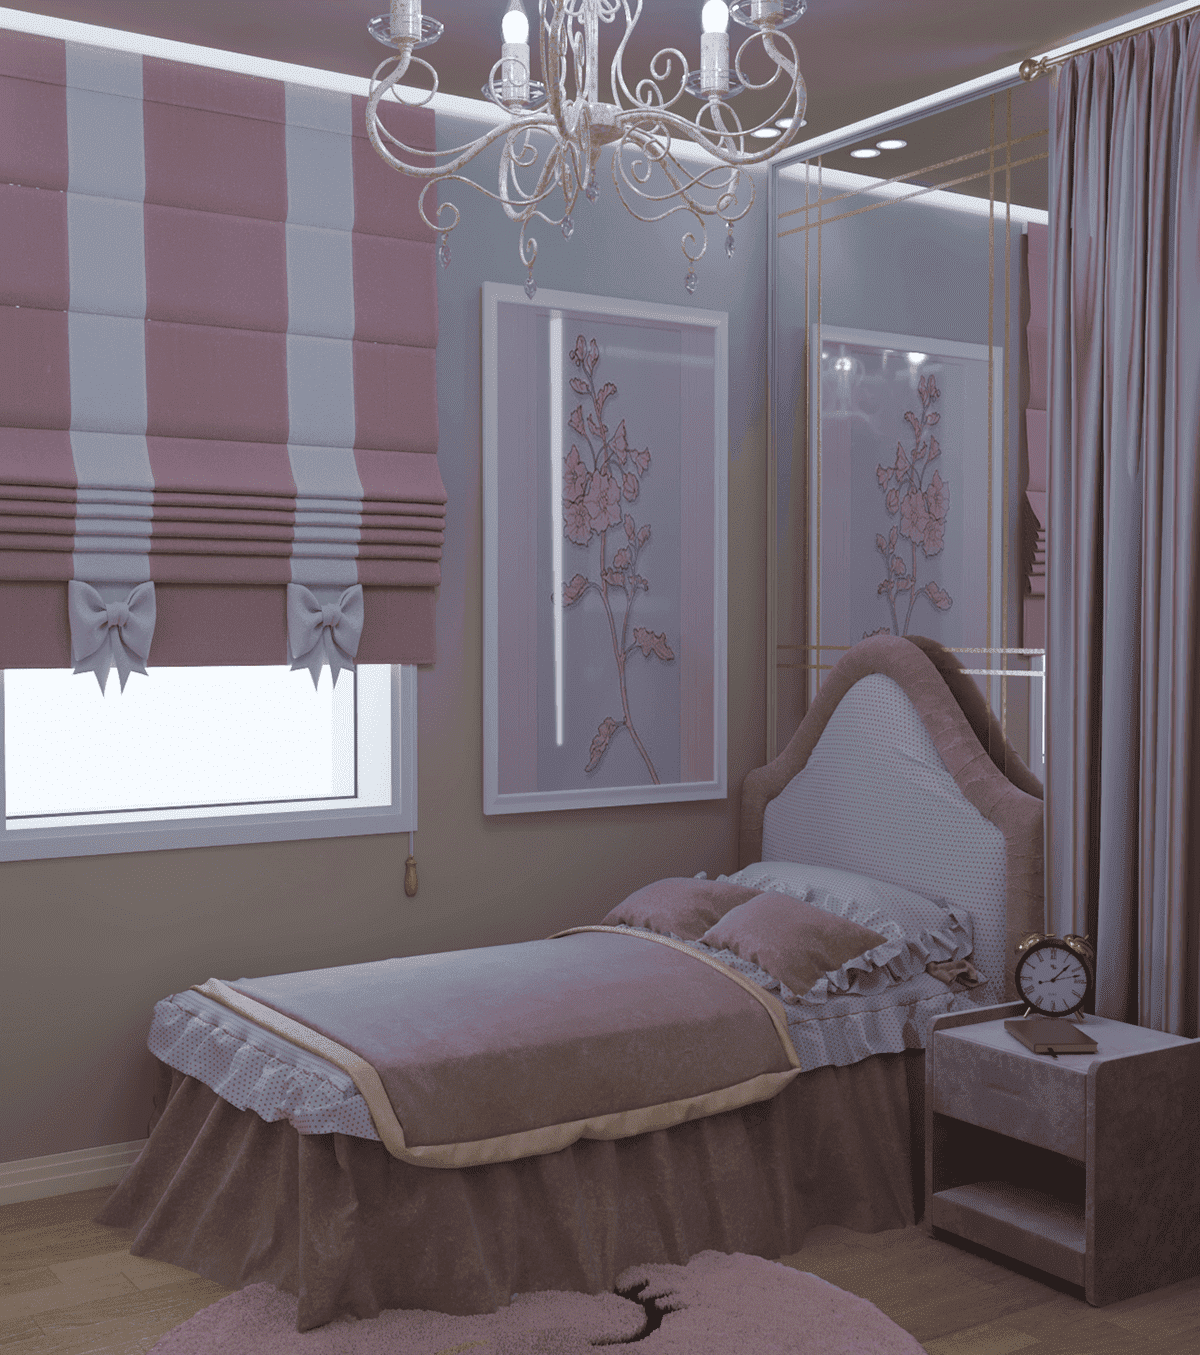 Sử dụng cửa sổ phòng ngủ màu hồng